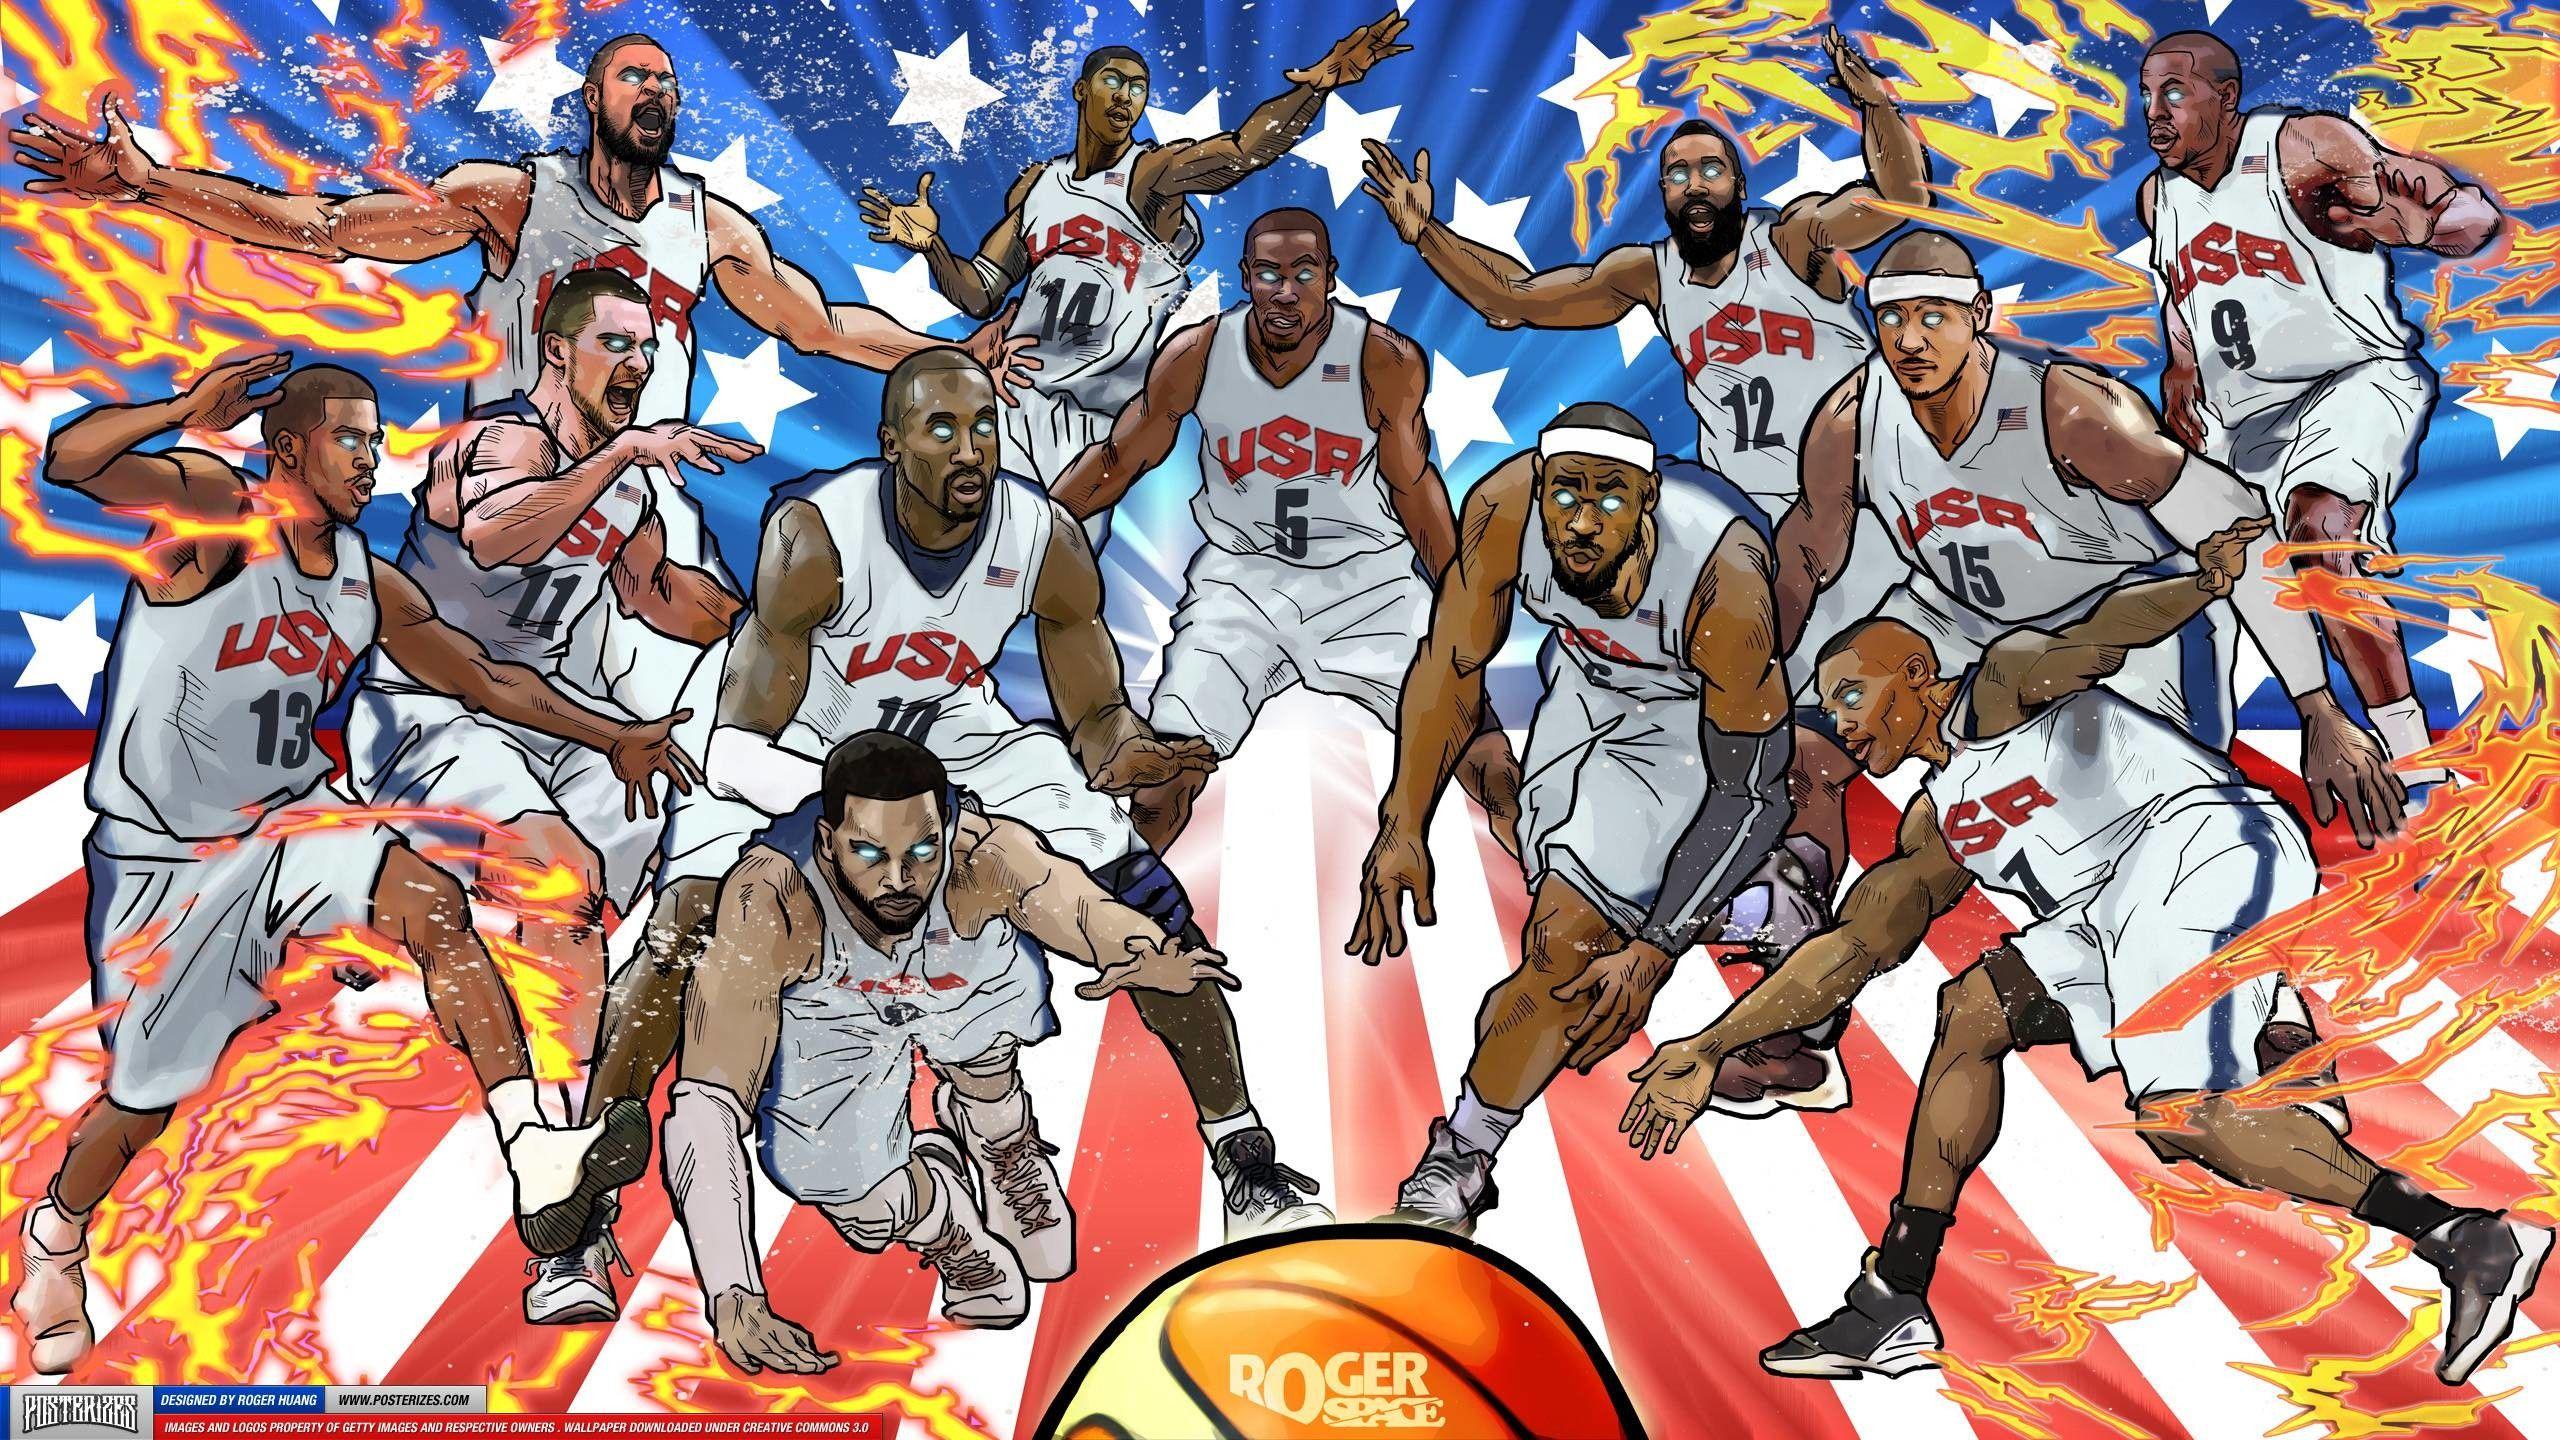 USA Basketball Team Wallpaper. Nba wallpaper, Team wallpaper, Basketball wallpaper